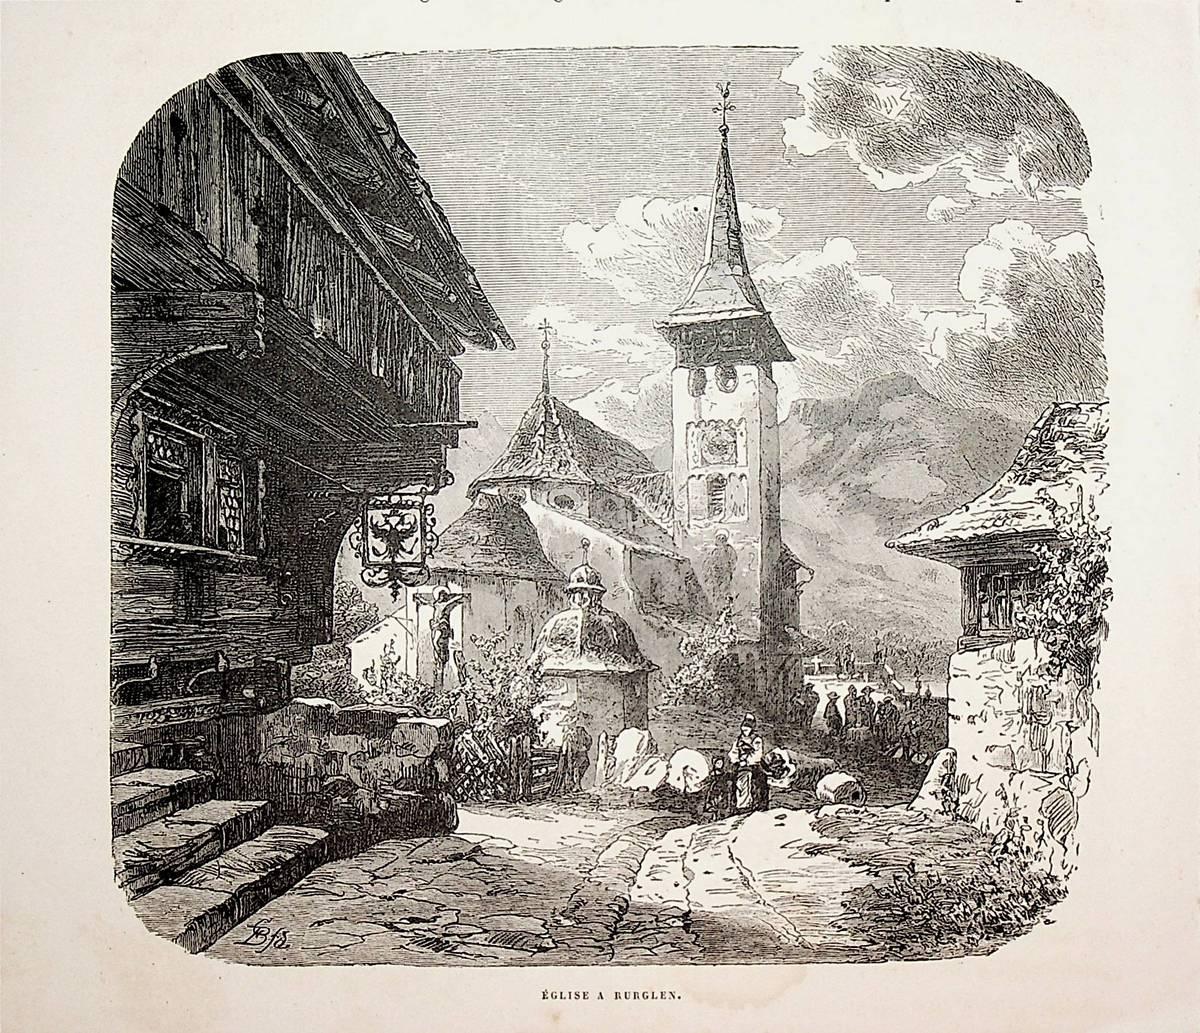 Bürglen - Kirche in Bürglen, Kanton Uri: (1880) Art / Print / Poster